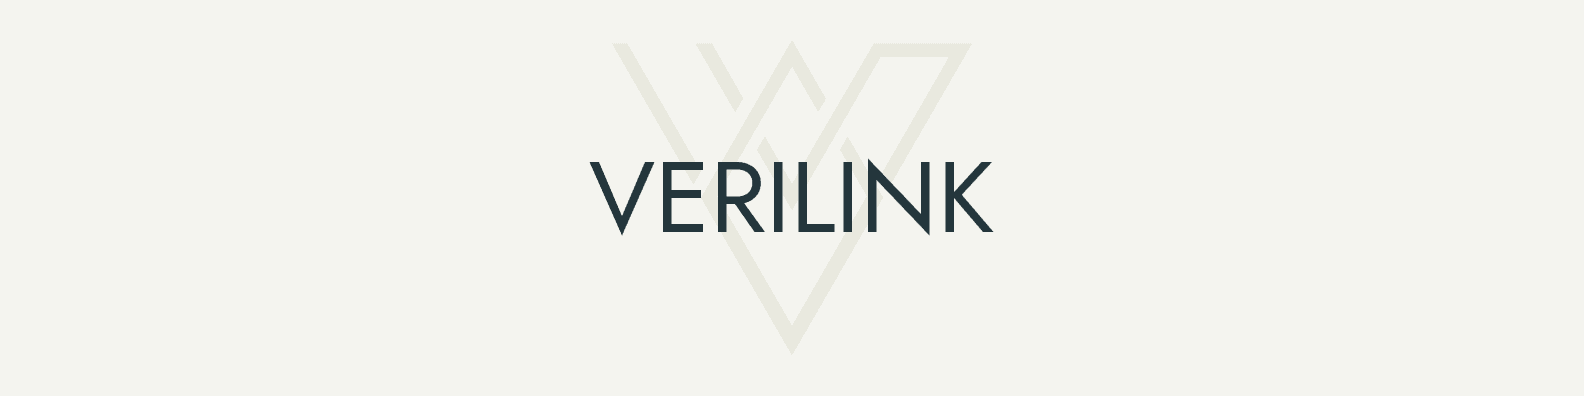 Verilink banner